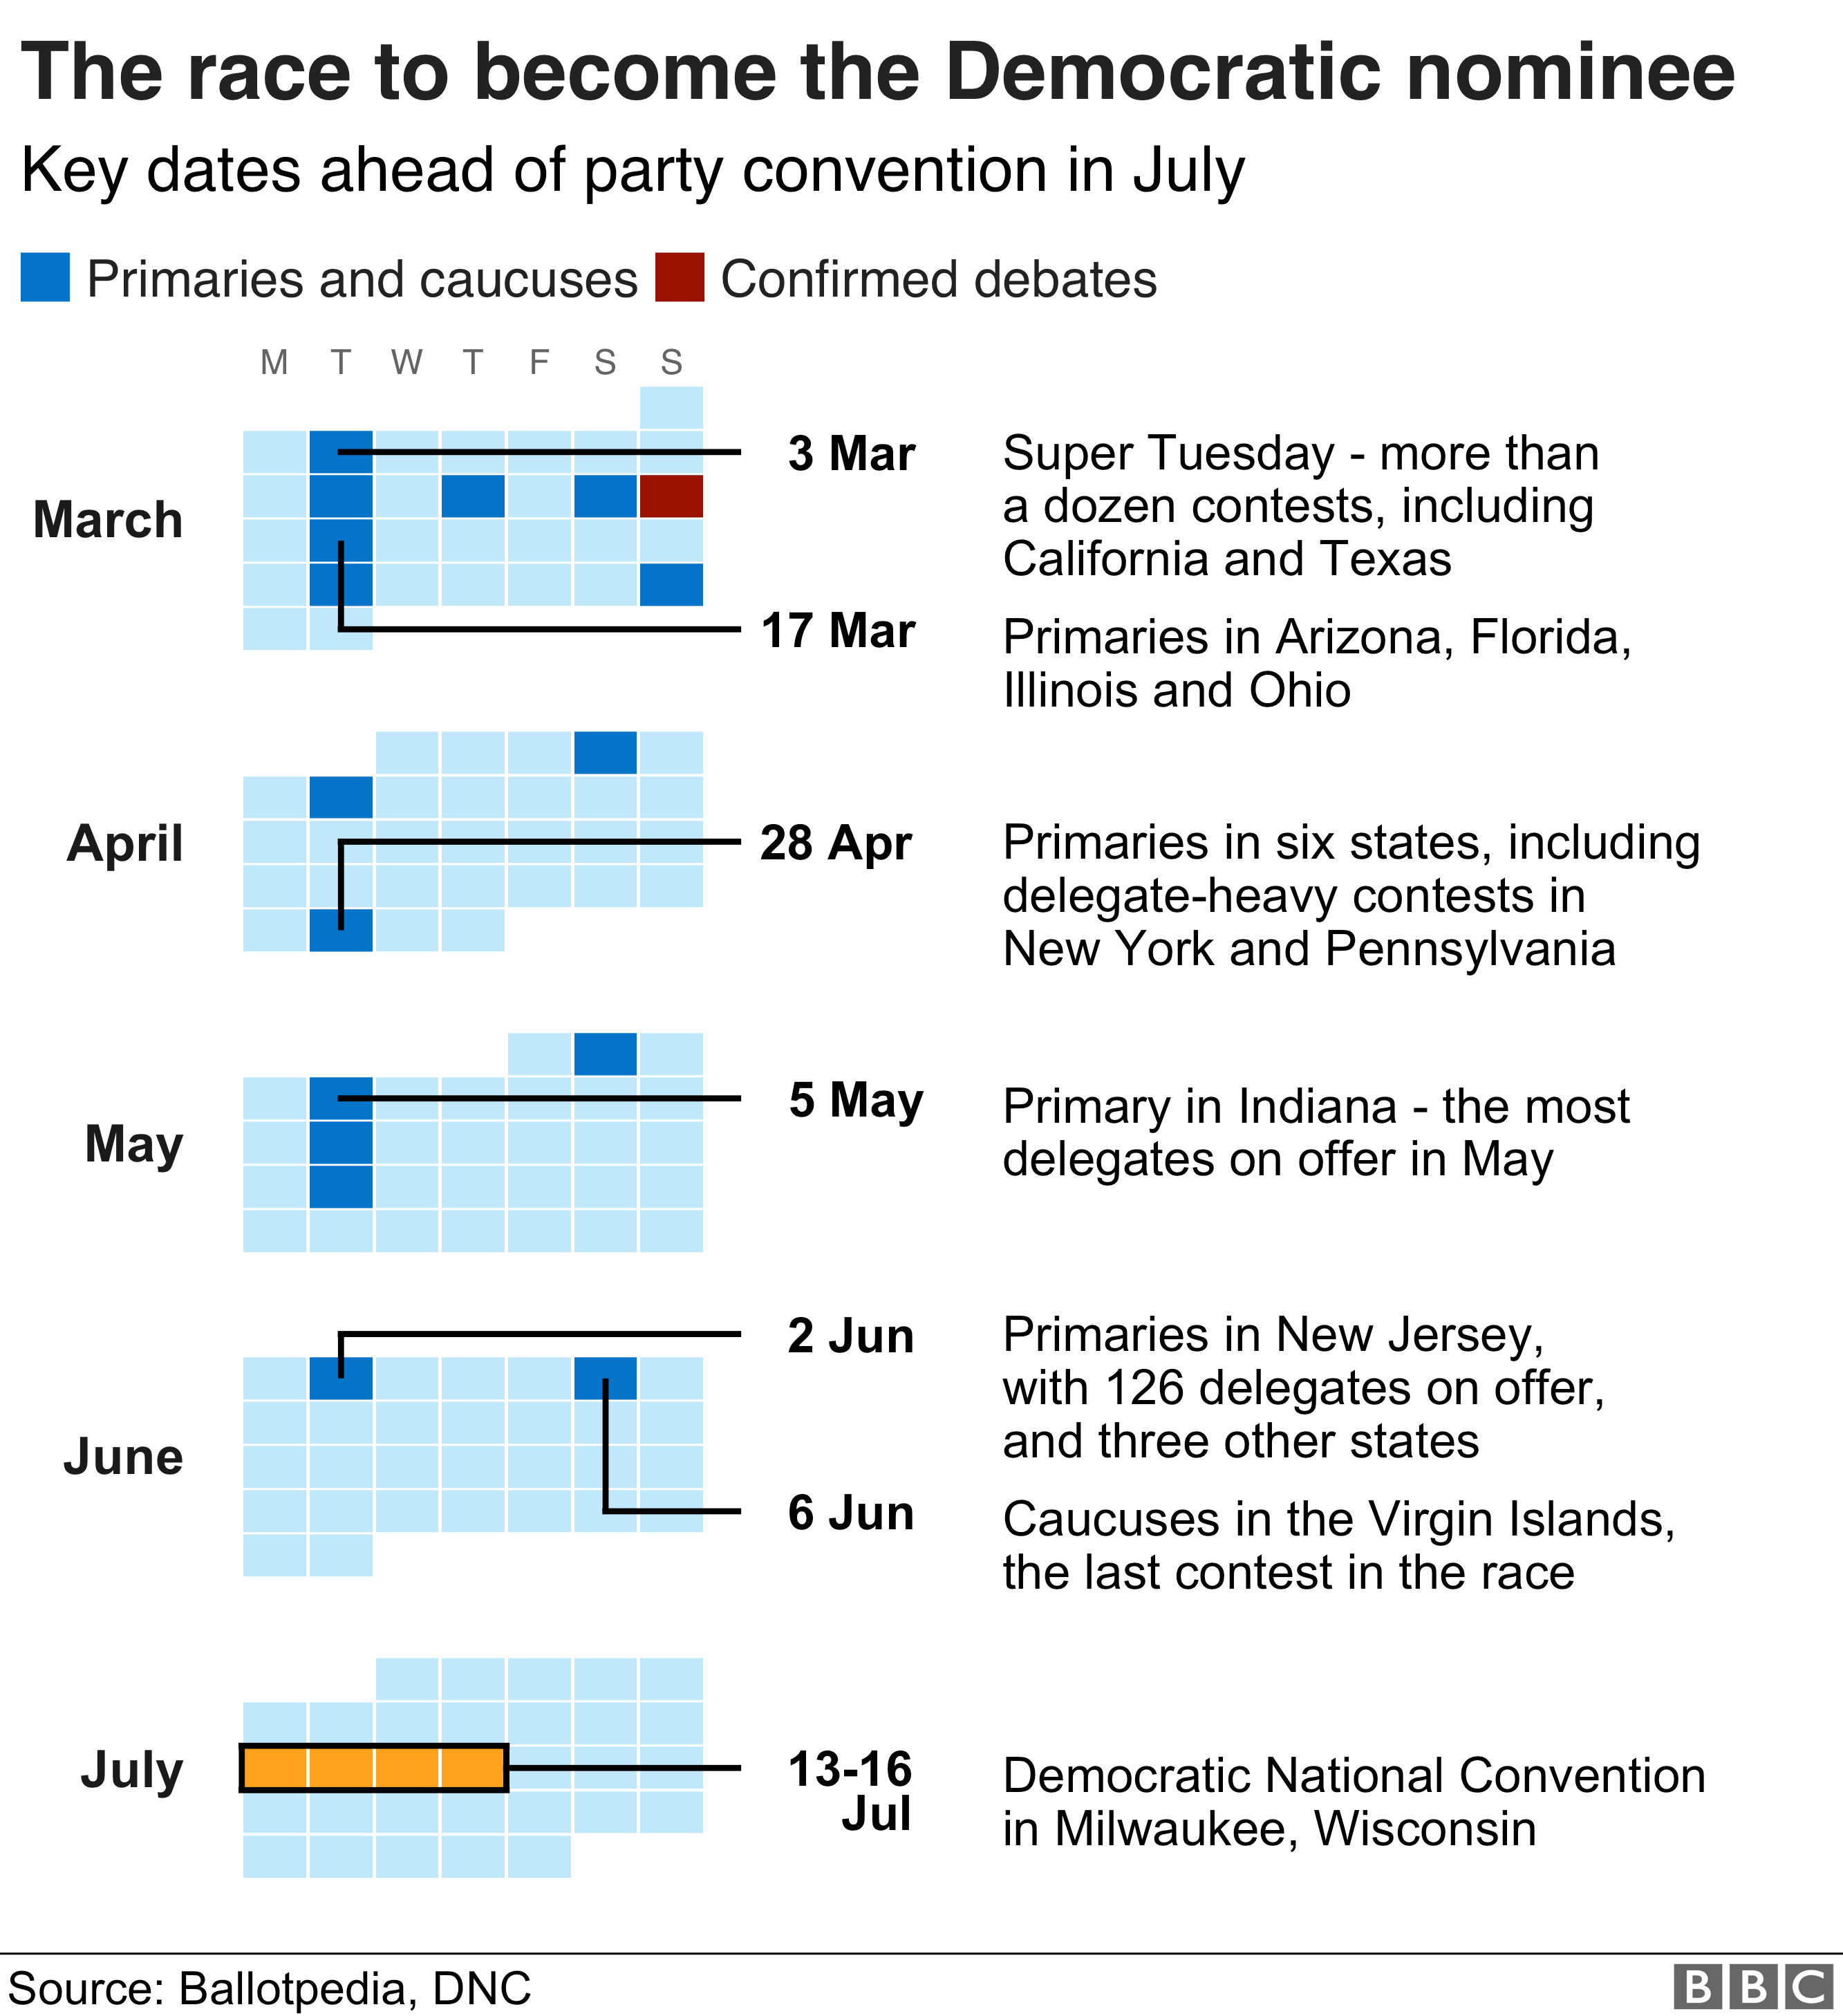 Календарь, показывающий ключевые даты в гонке за выдвижение кандидата от Демократической партии